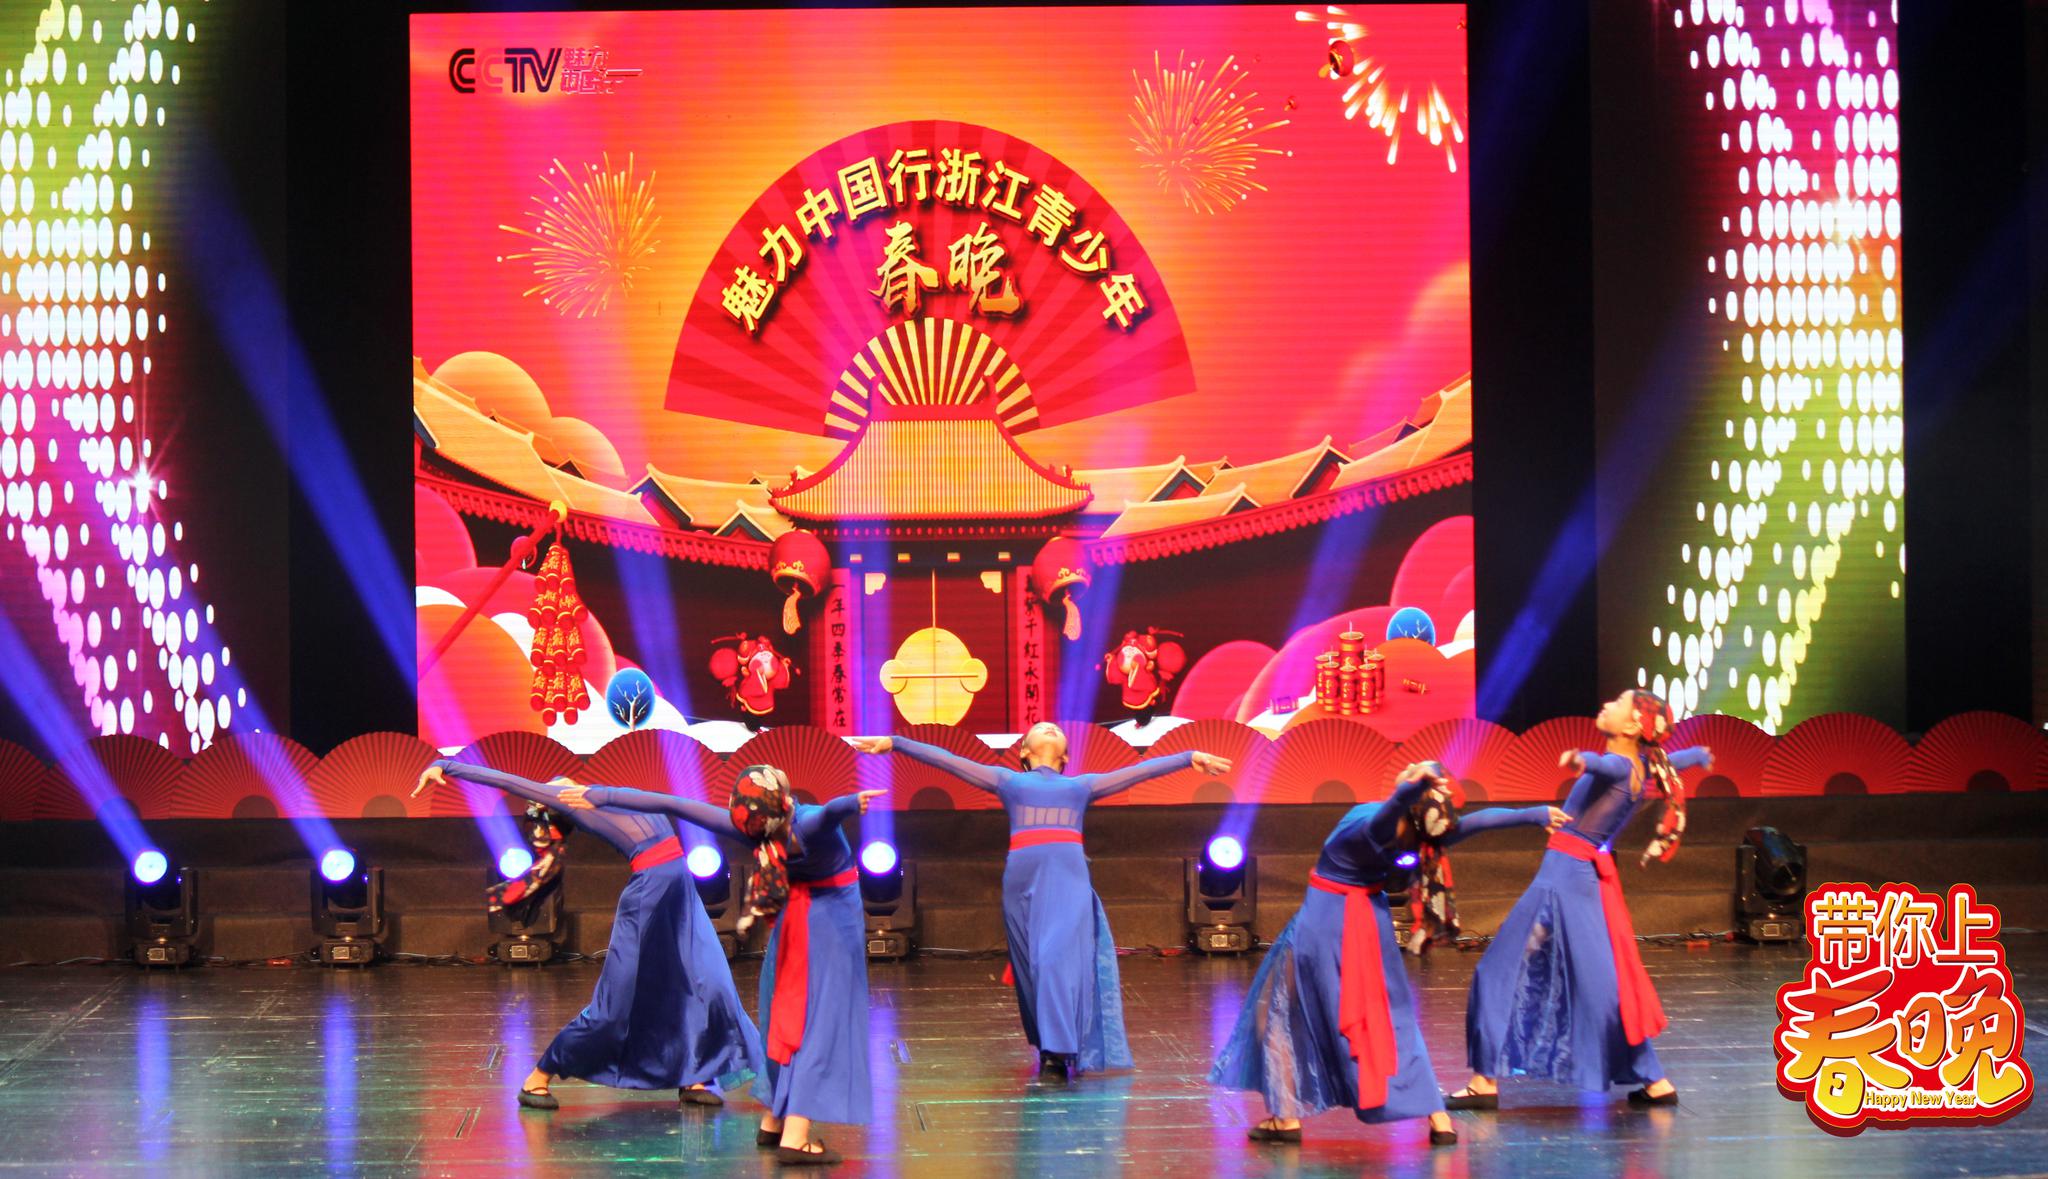 恭喜彬彬舞蹈在cctv魅力中国行浙江省总决赛中取得好成绩!